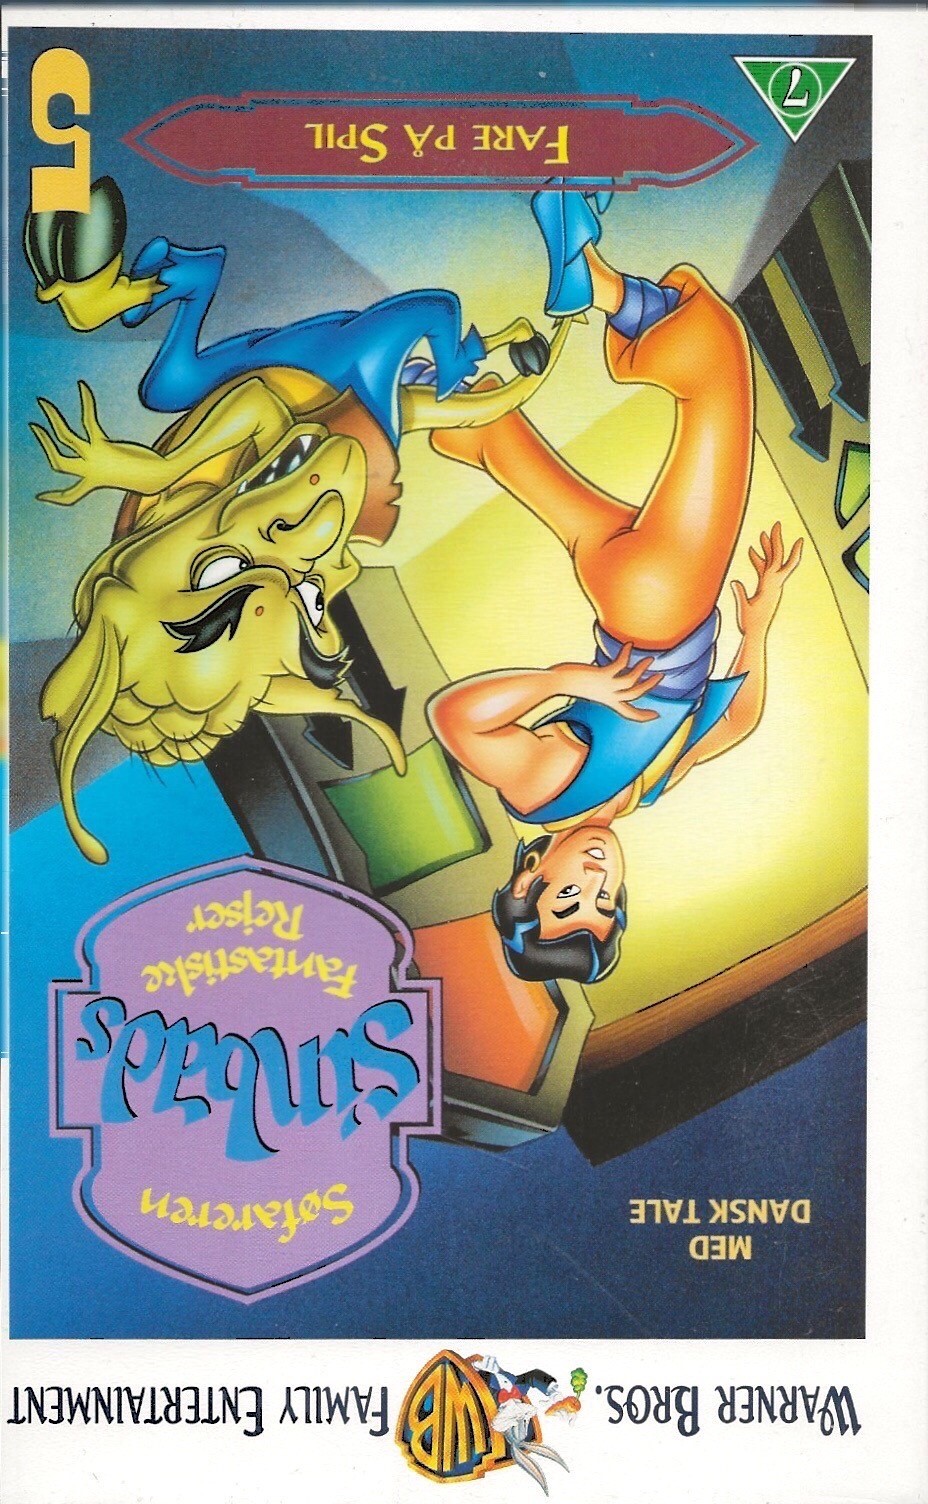 Søfaren Sinbads Fantastiske Rejser vol. 5 - Fare på Spil <p>Org.titel: The Fantastic Voyages of Sinbad the Sailor</p> VHS Warner Bros. 1996